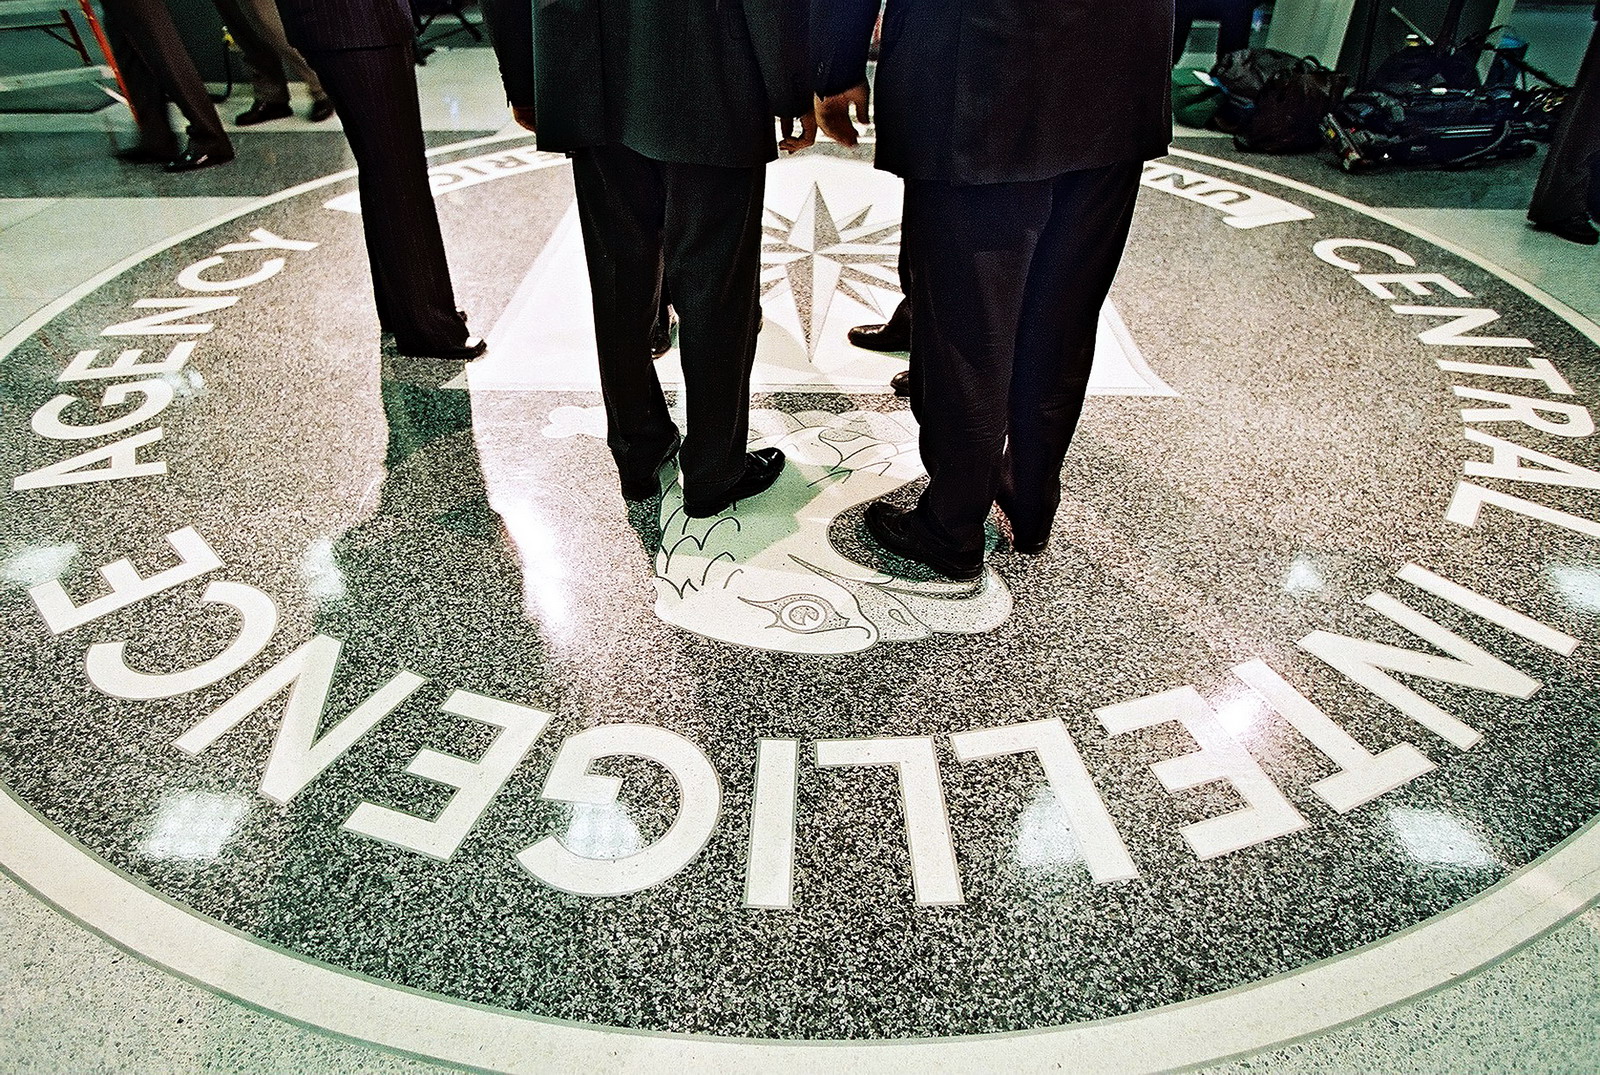 A CIA egymillió dollárt utalt át Oszama bin Ladennek